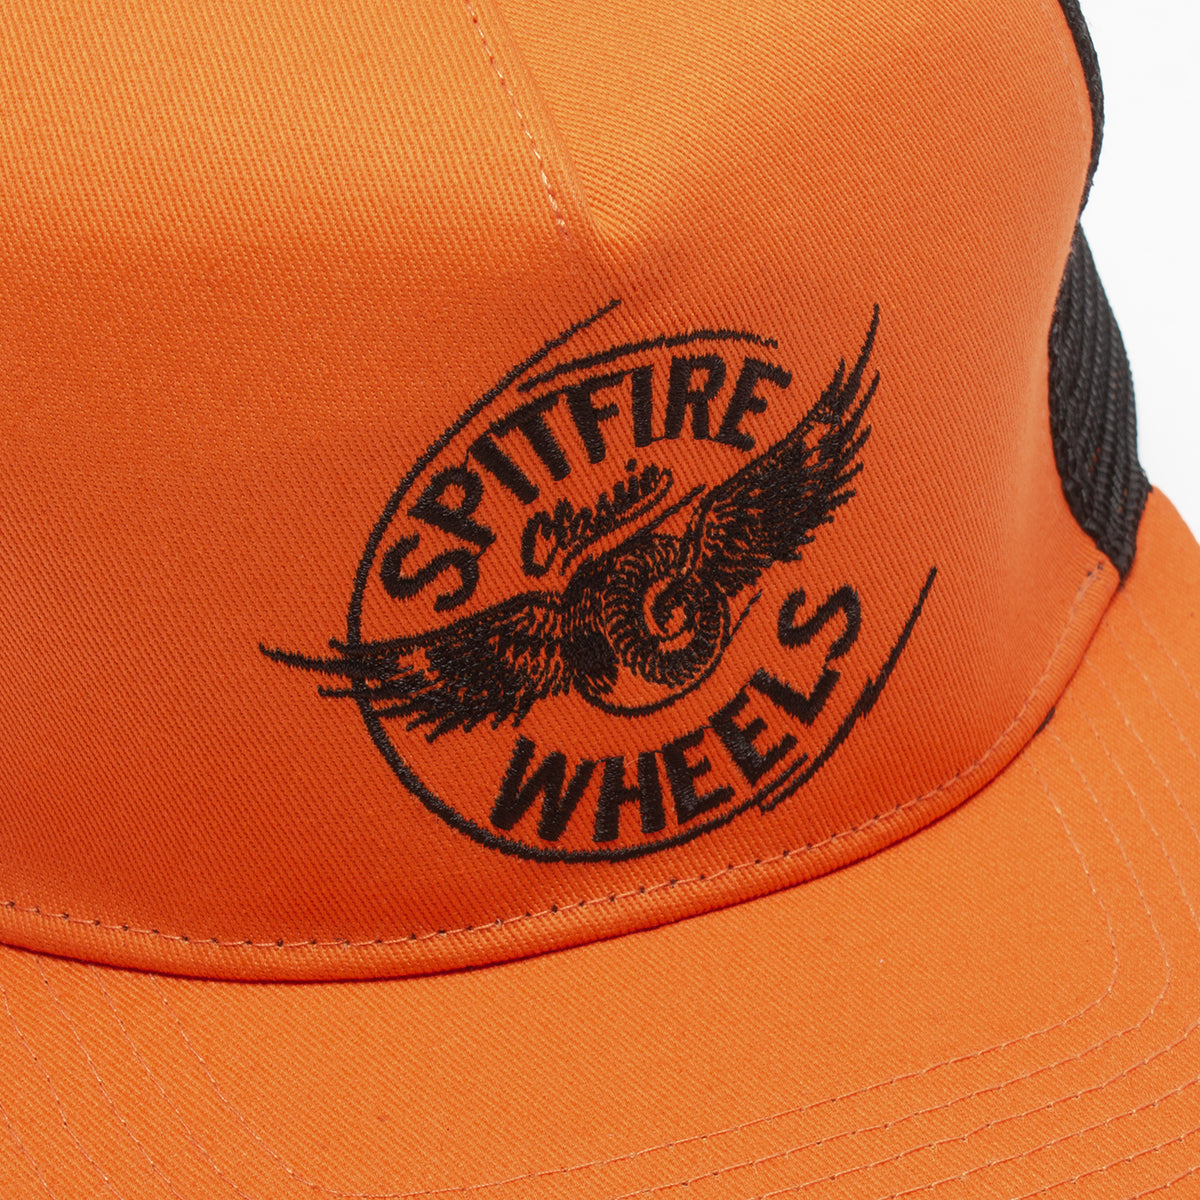 Spitfire | Flying Hat Style # 50010219B00 Color : Orange / Black